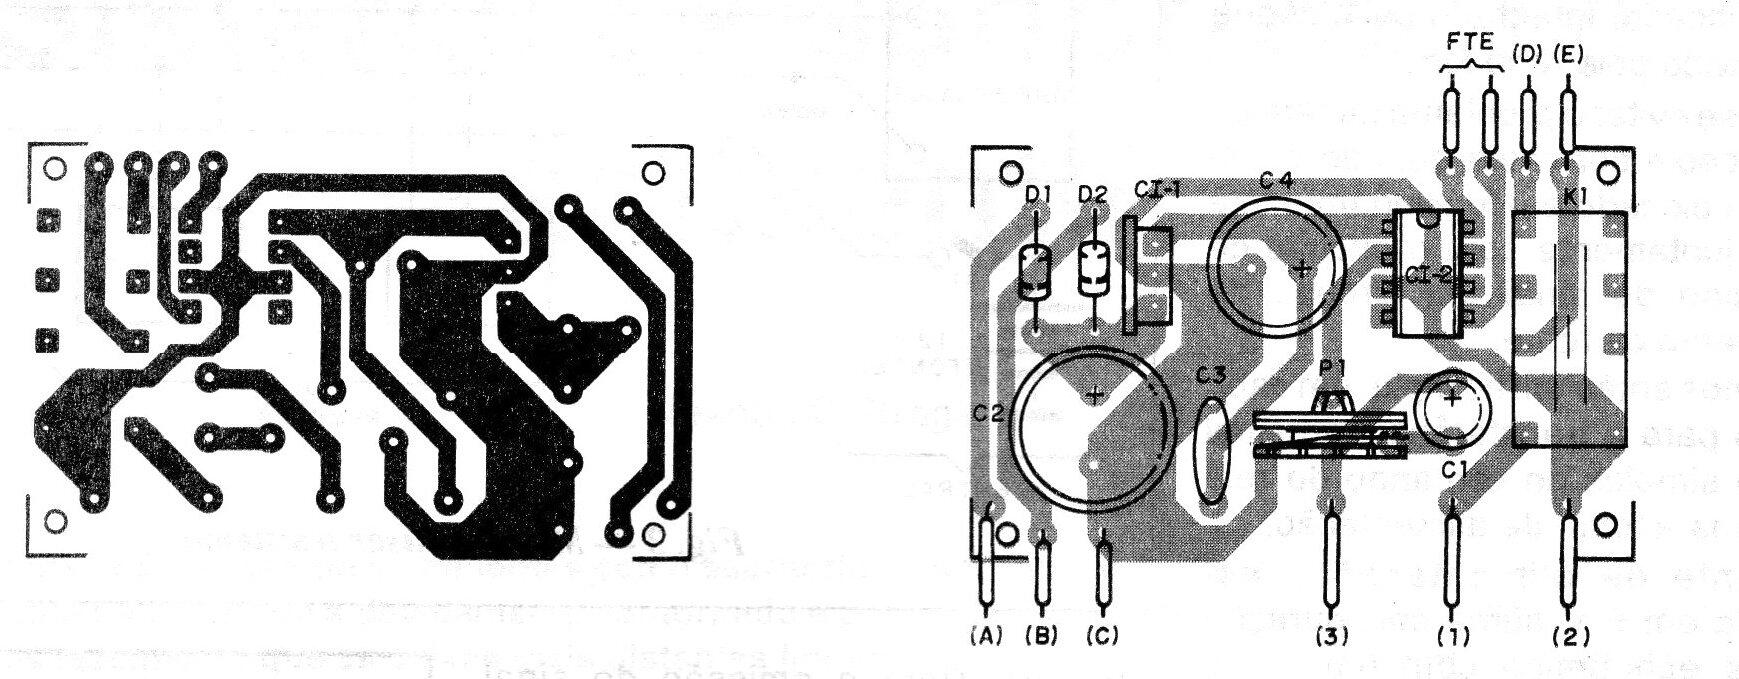   Figura 5 - Placa de circuito impreso para el montaje
